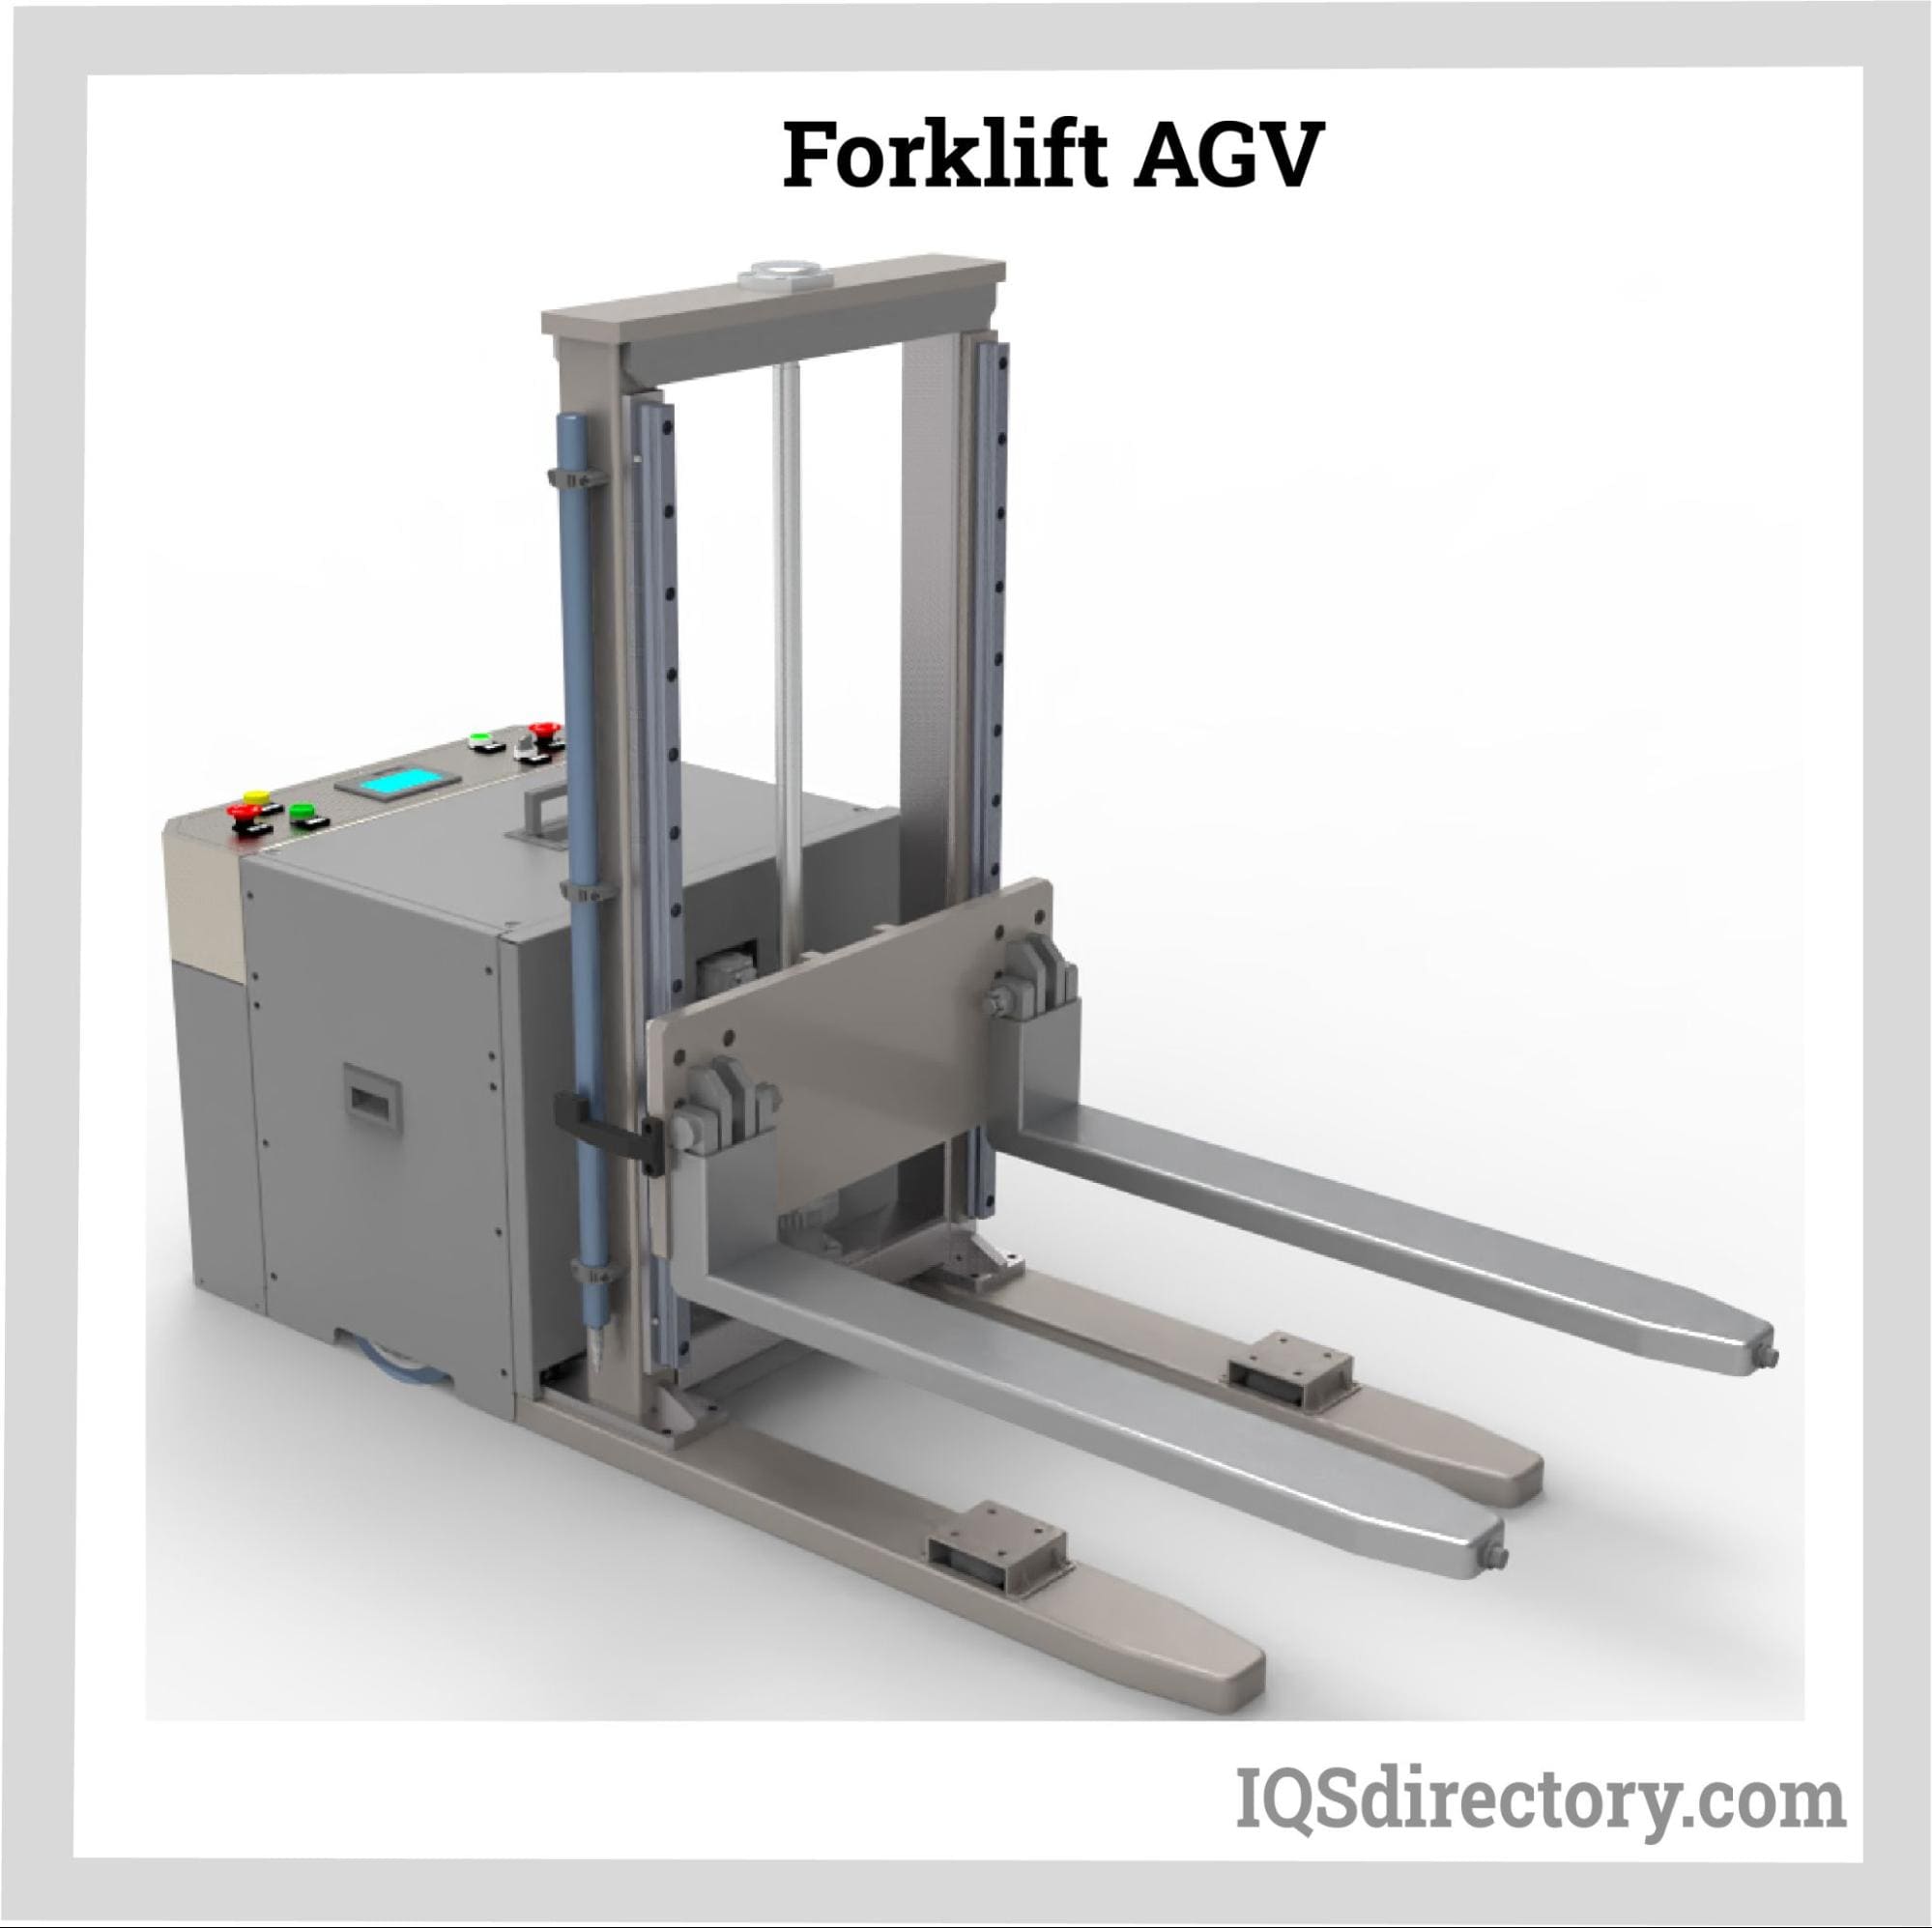 Forklift AGV